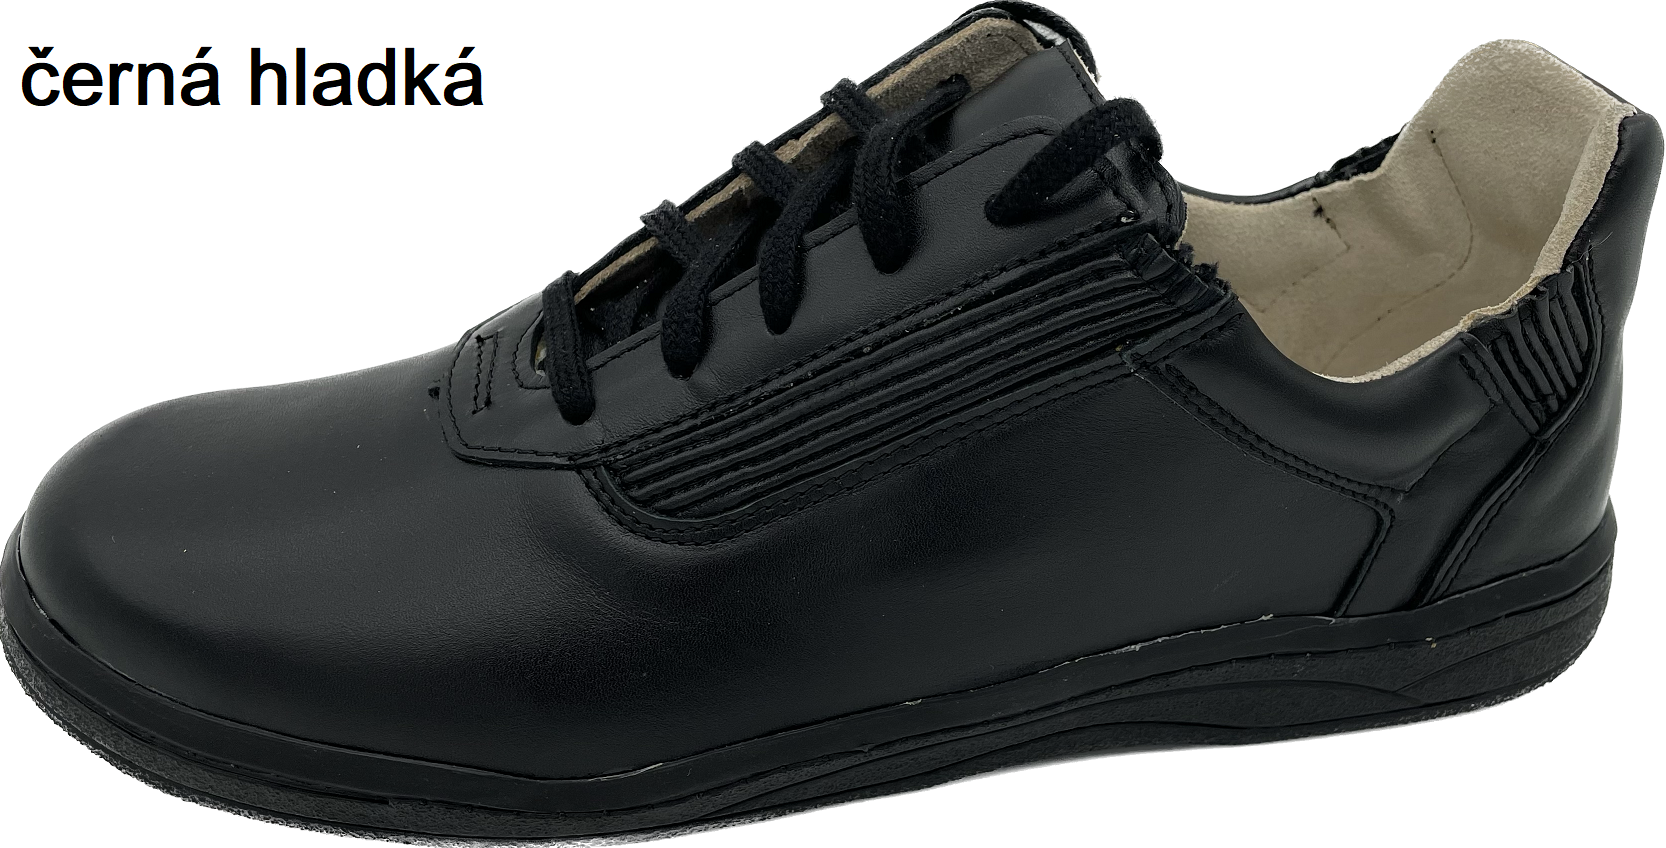 Boty Hanák Active dámská - černá podešev Barva usně: černá hladká, Velikosti obuvi: 35